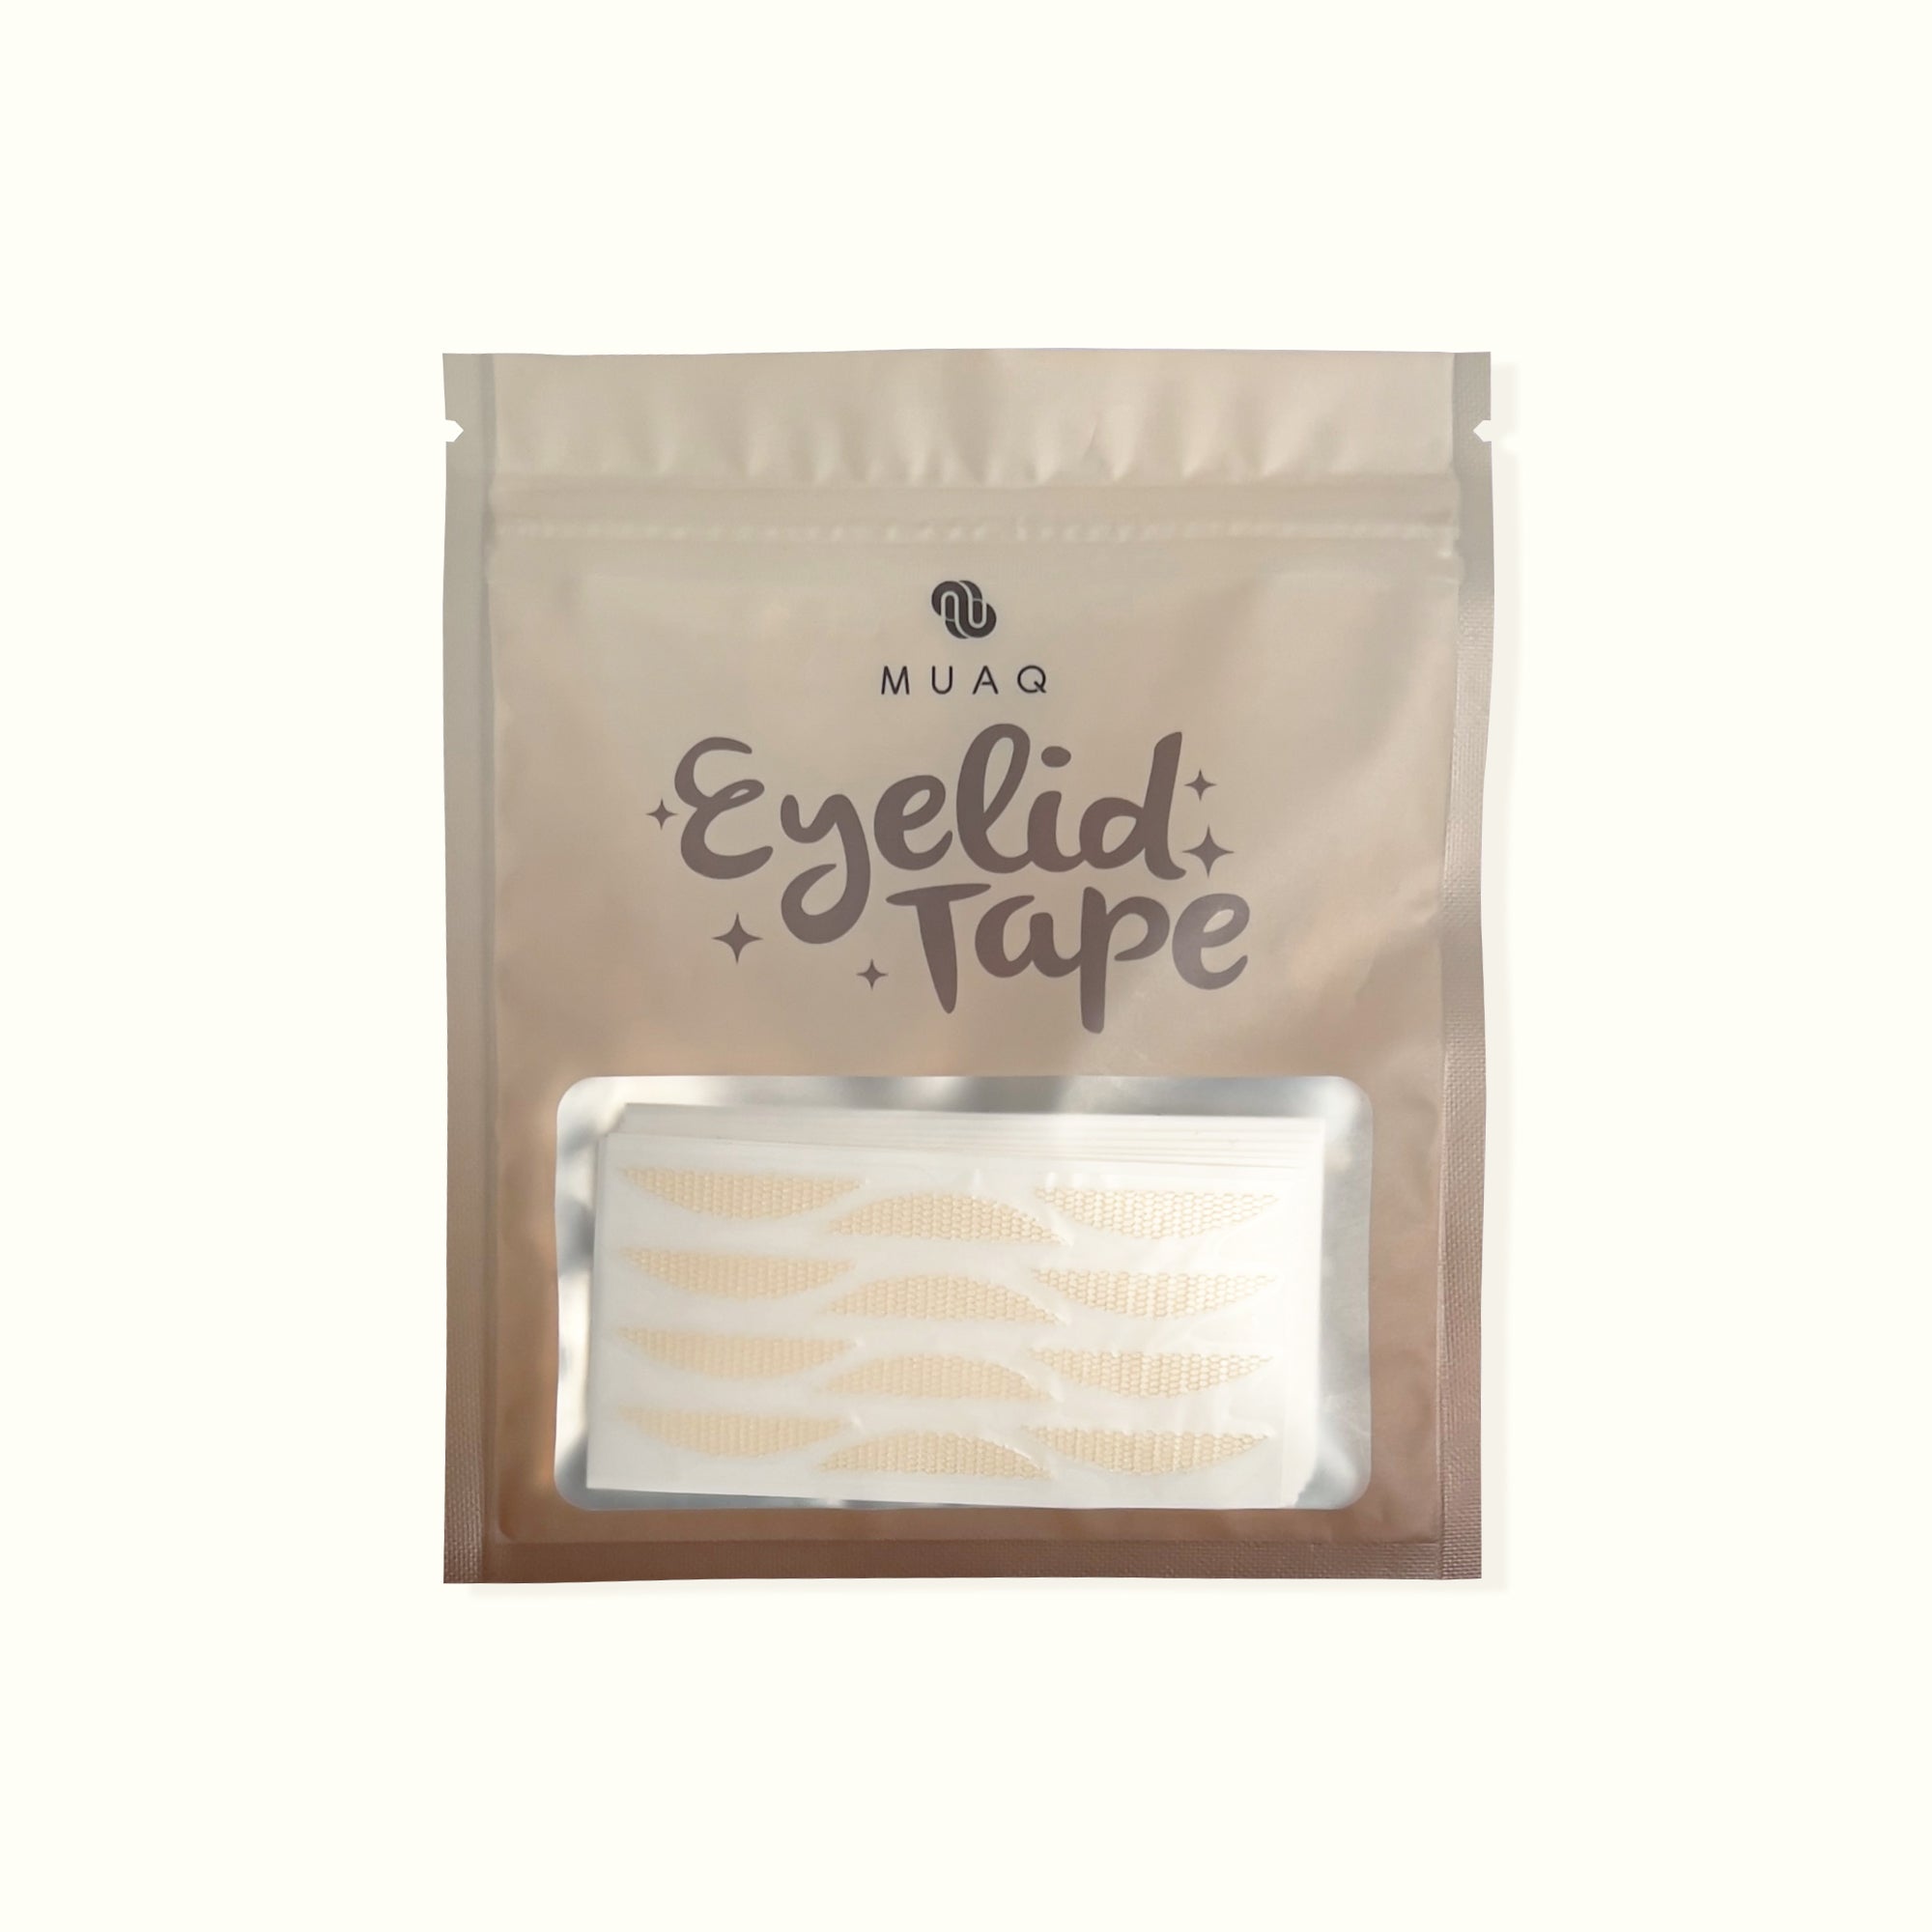 MUAQ Nylon Lace Eyelid Tape - Large